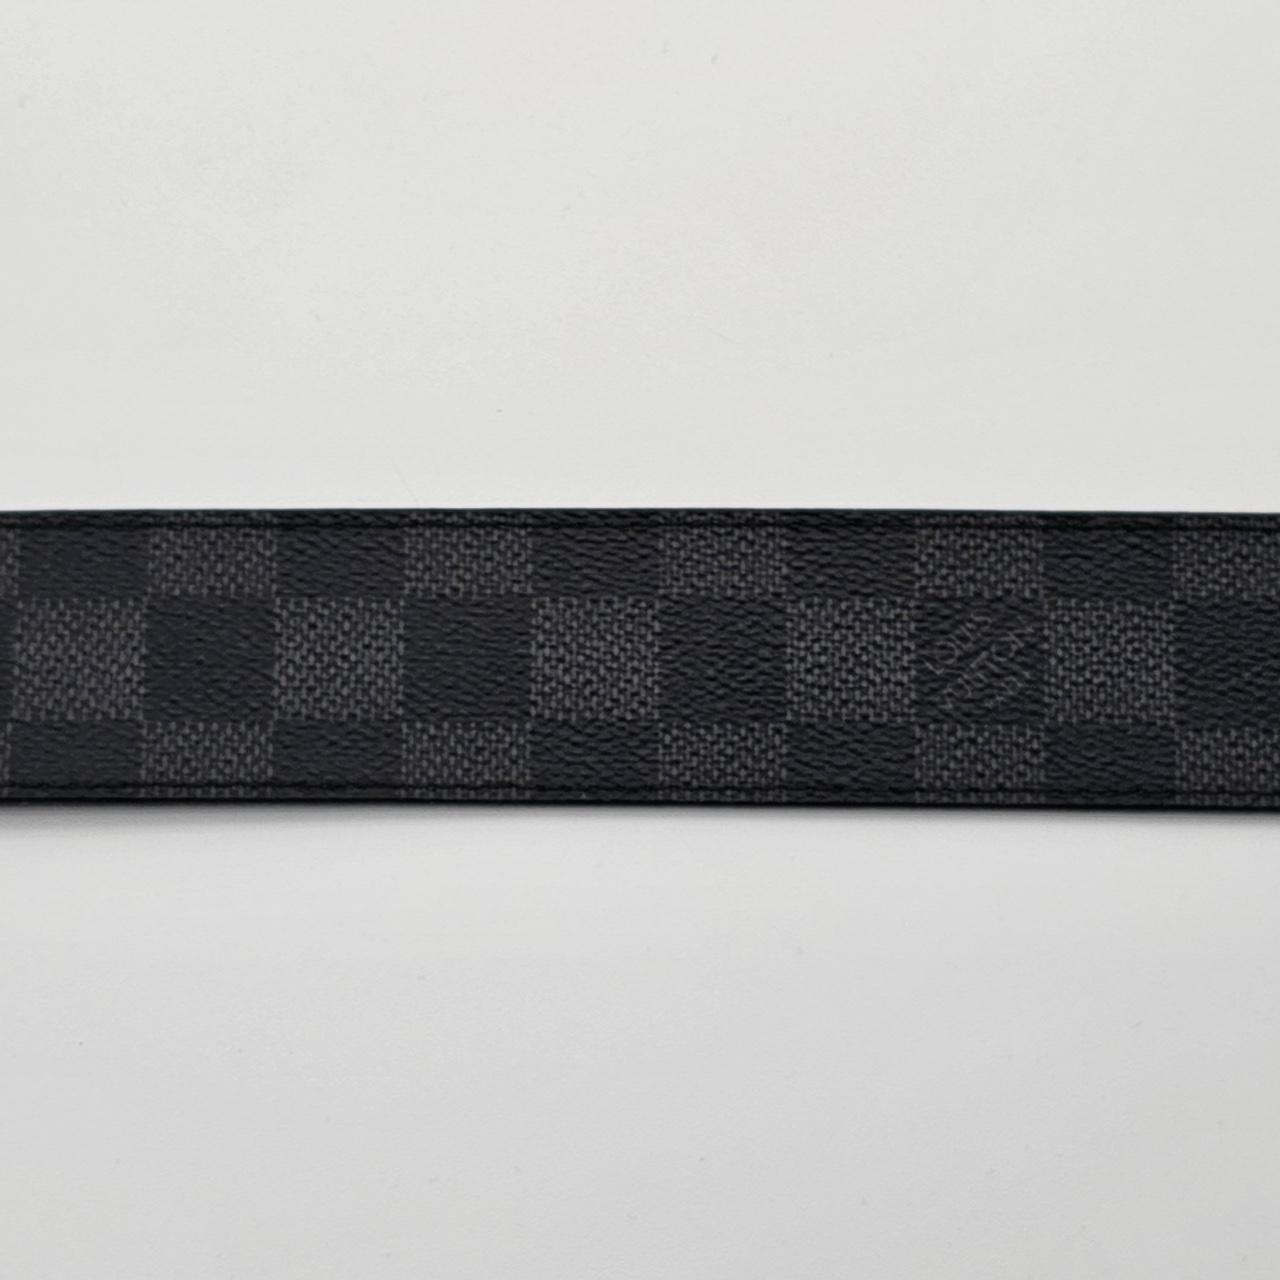 Louis Vuitton Belt - 100% Authentic - Condition: - Depop